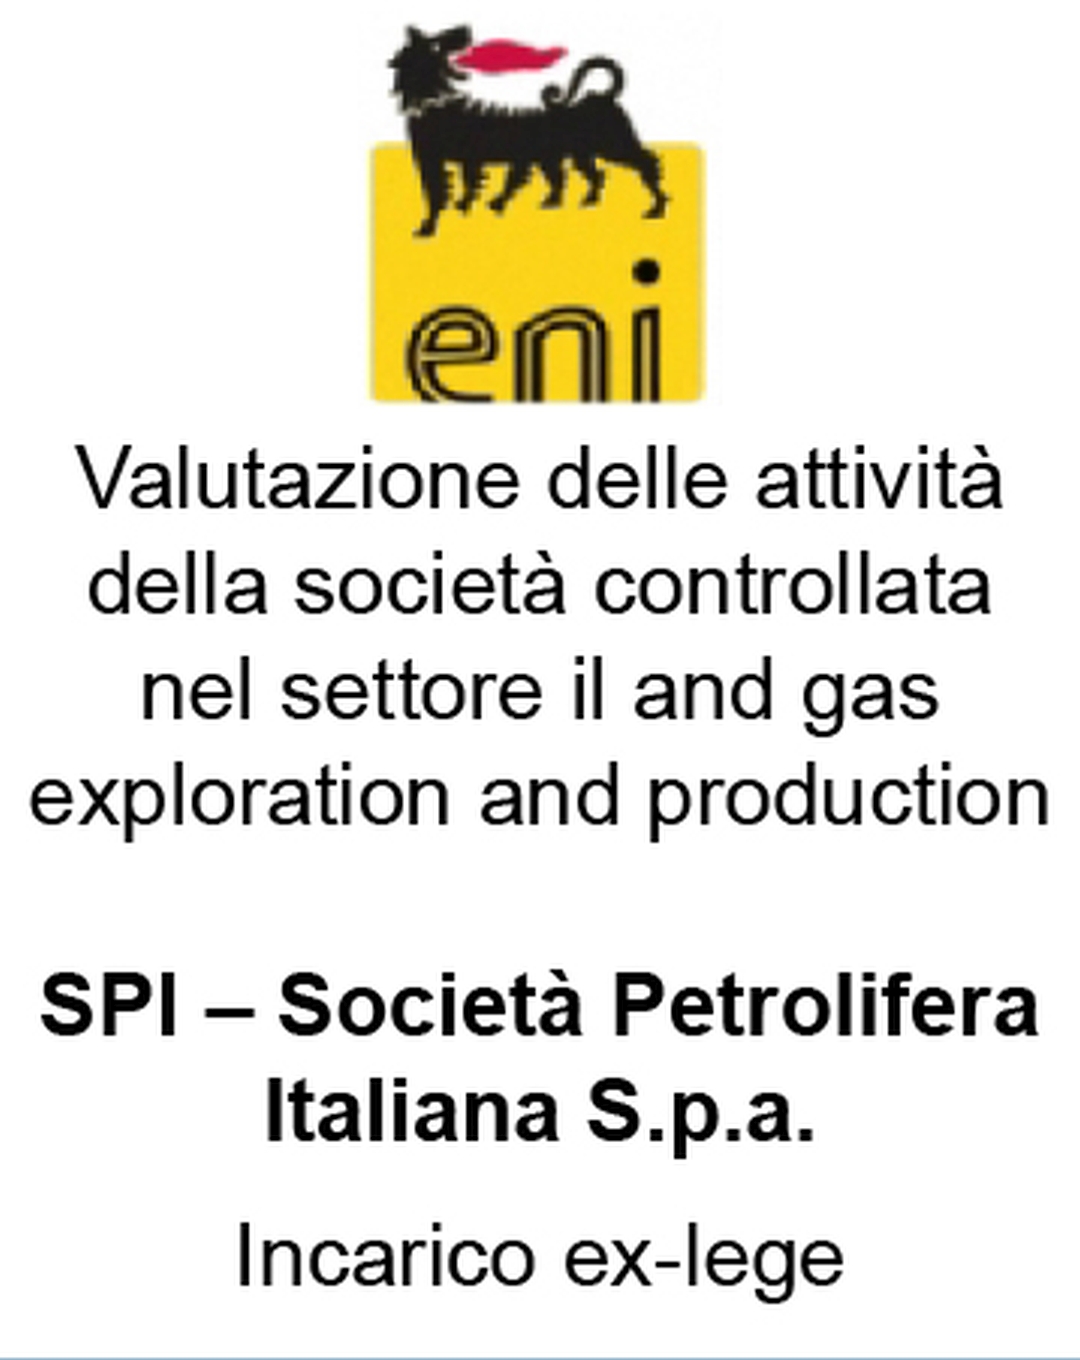 Valutazione delle attività della società controllata nel settore il and gas exploration and production SPI – Società Petrolifera Italiana S.p.a